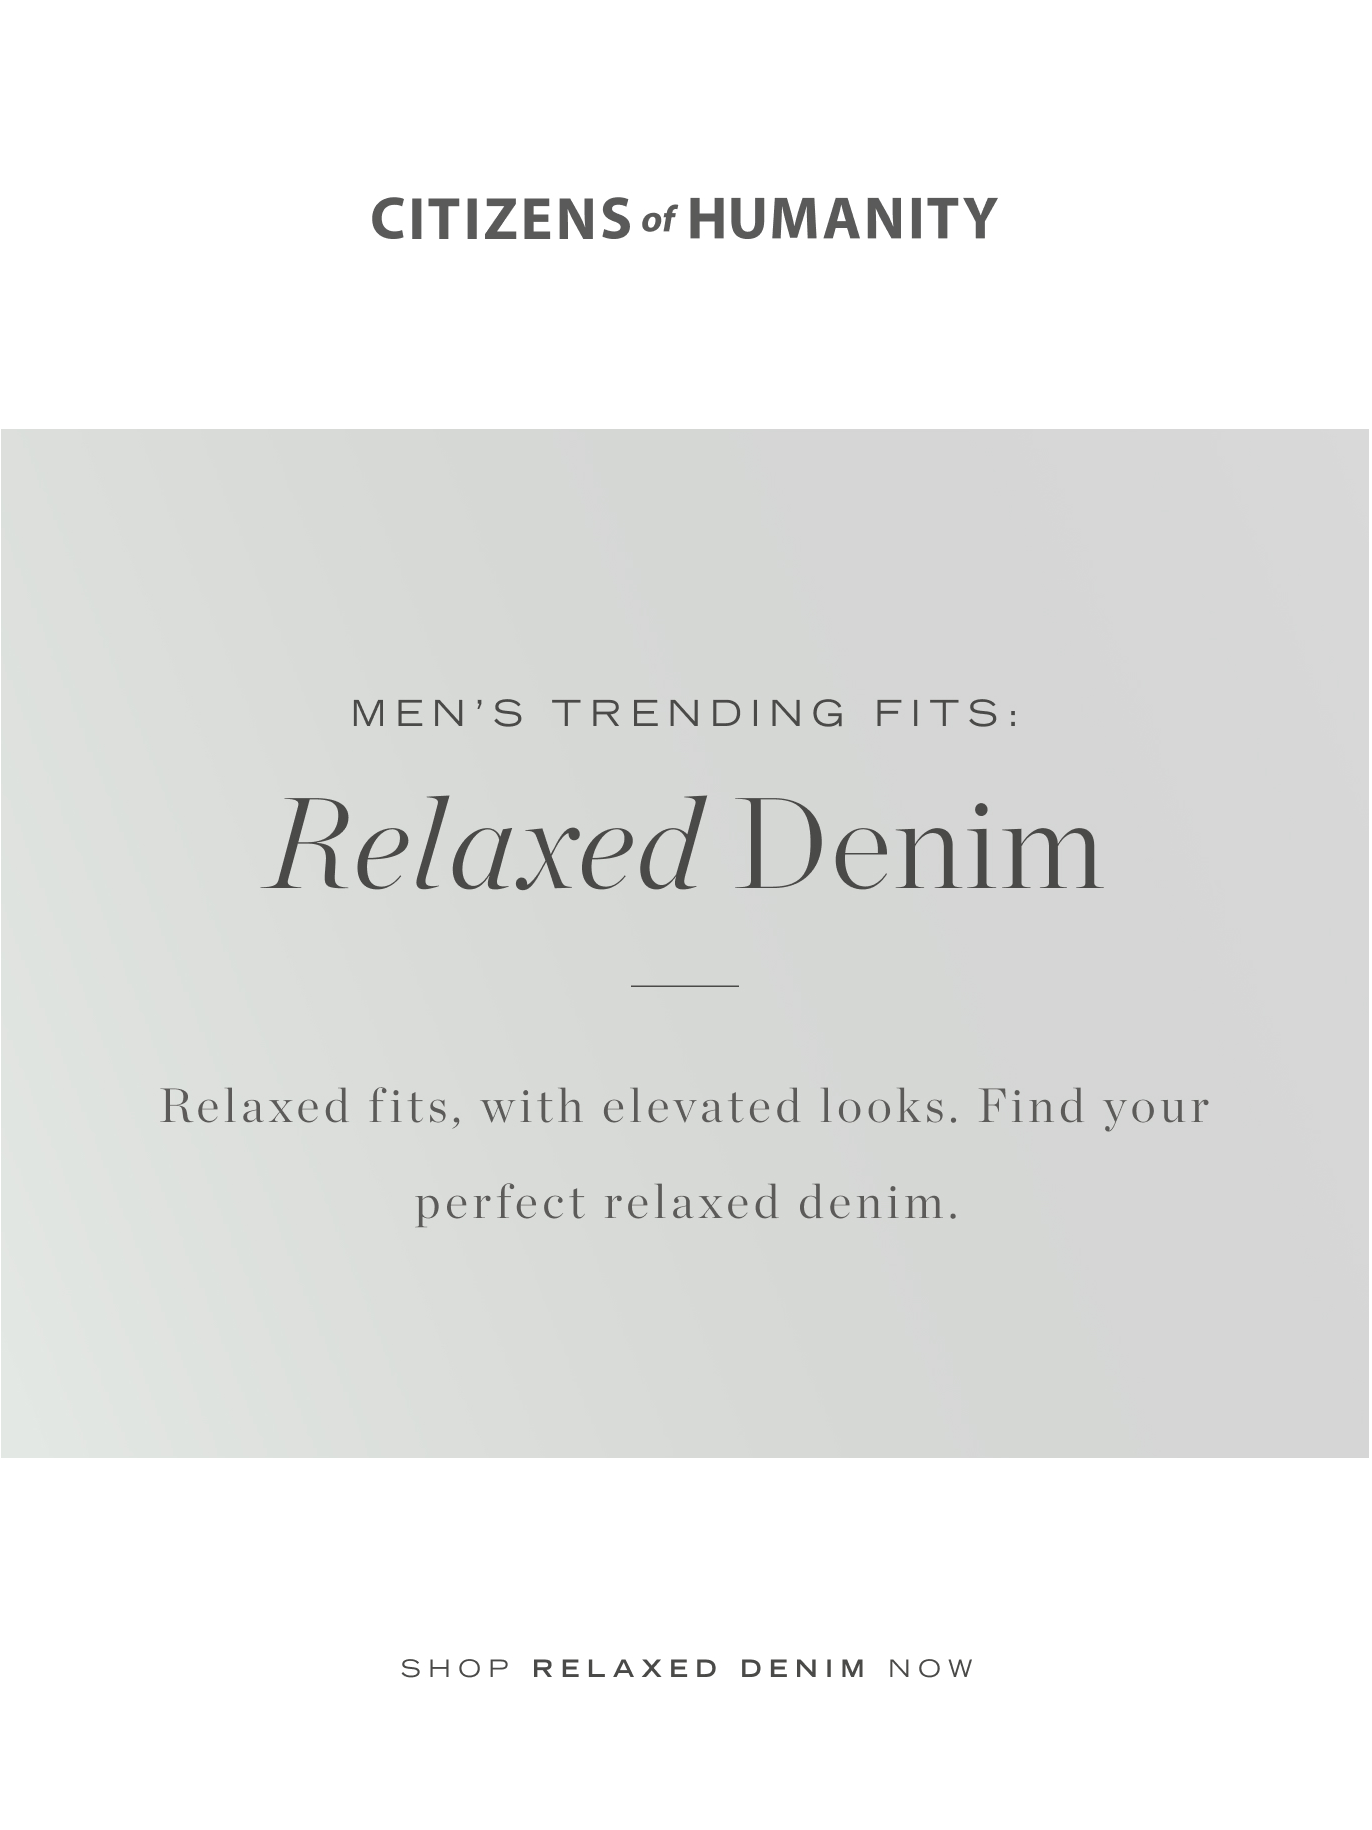 Men's Relaxed Denim